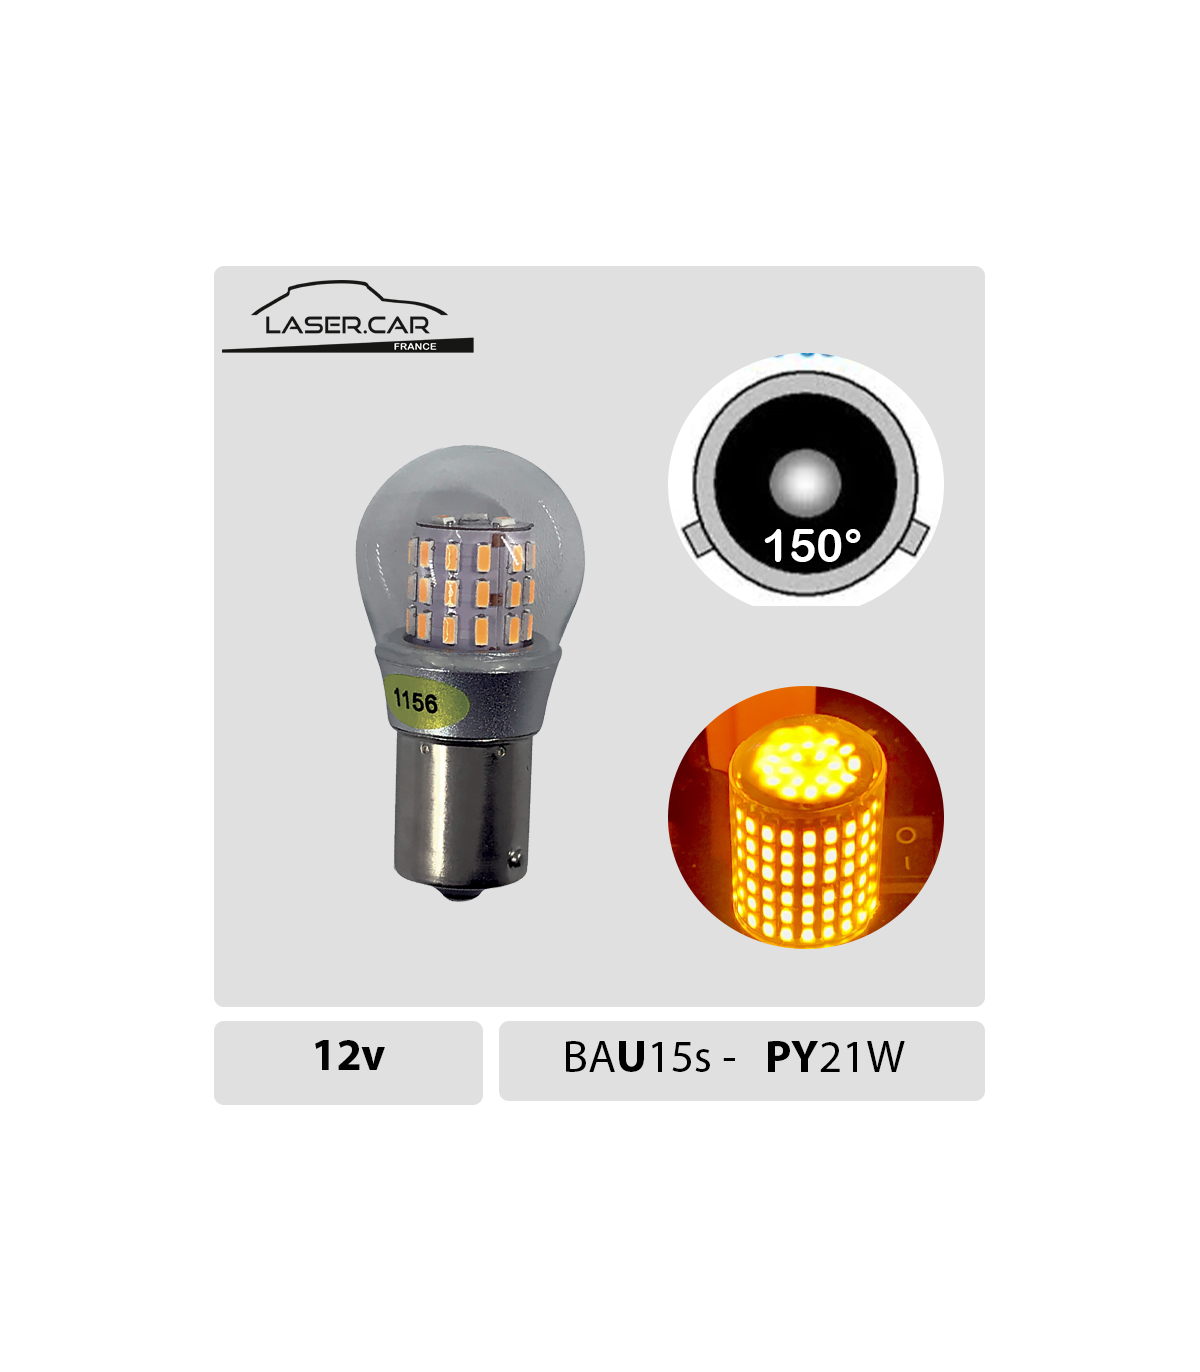 PY21w LED BAU15s, 1156 LED12v Série 3D PRO